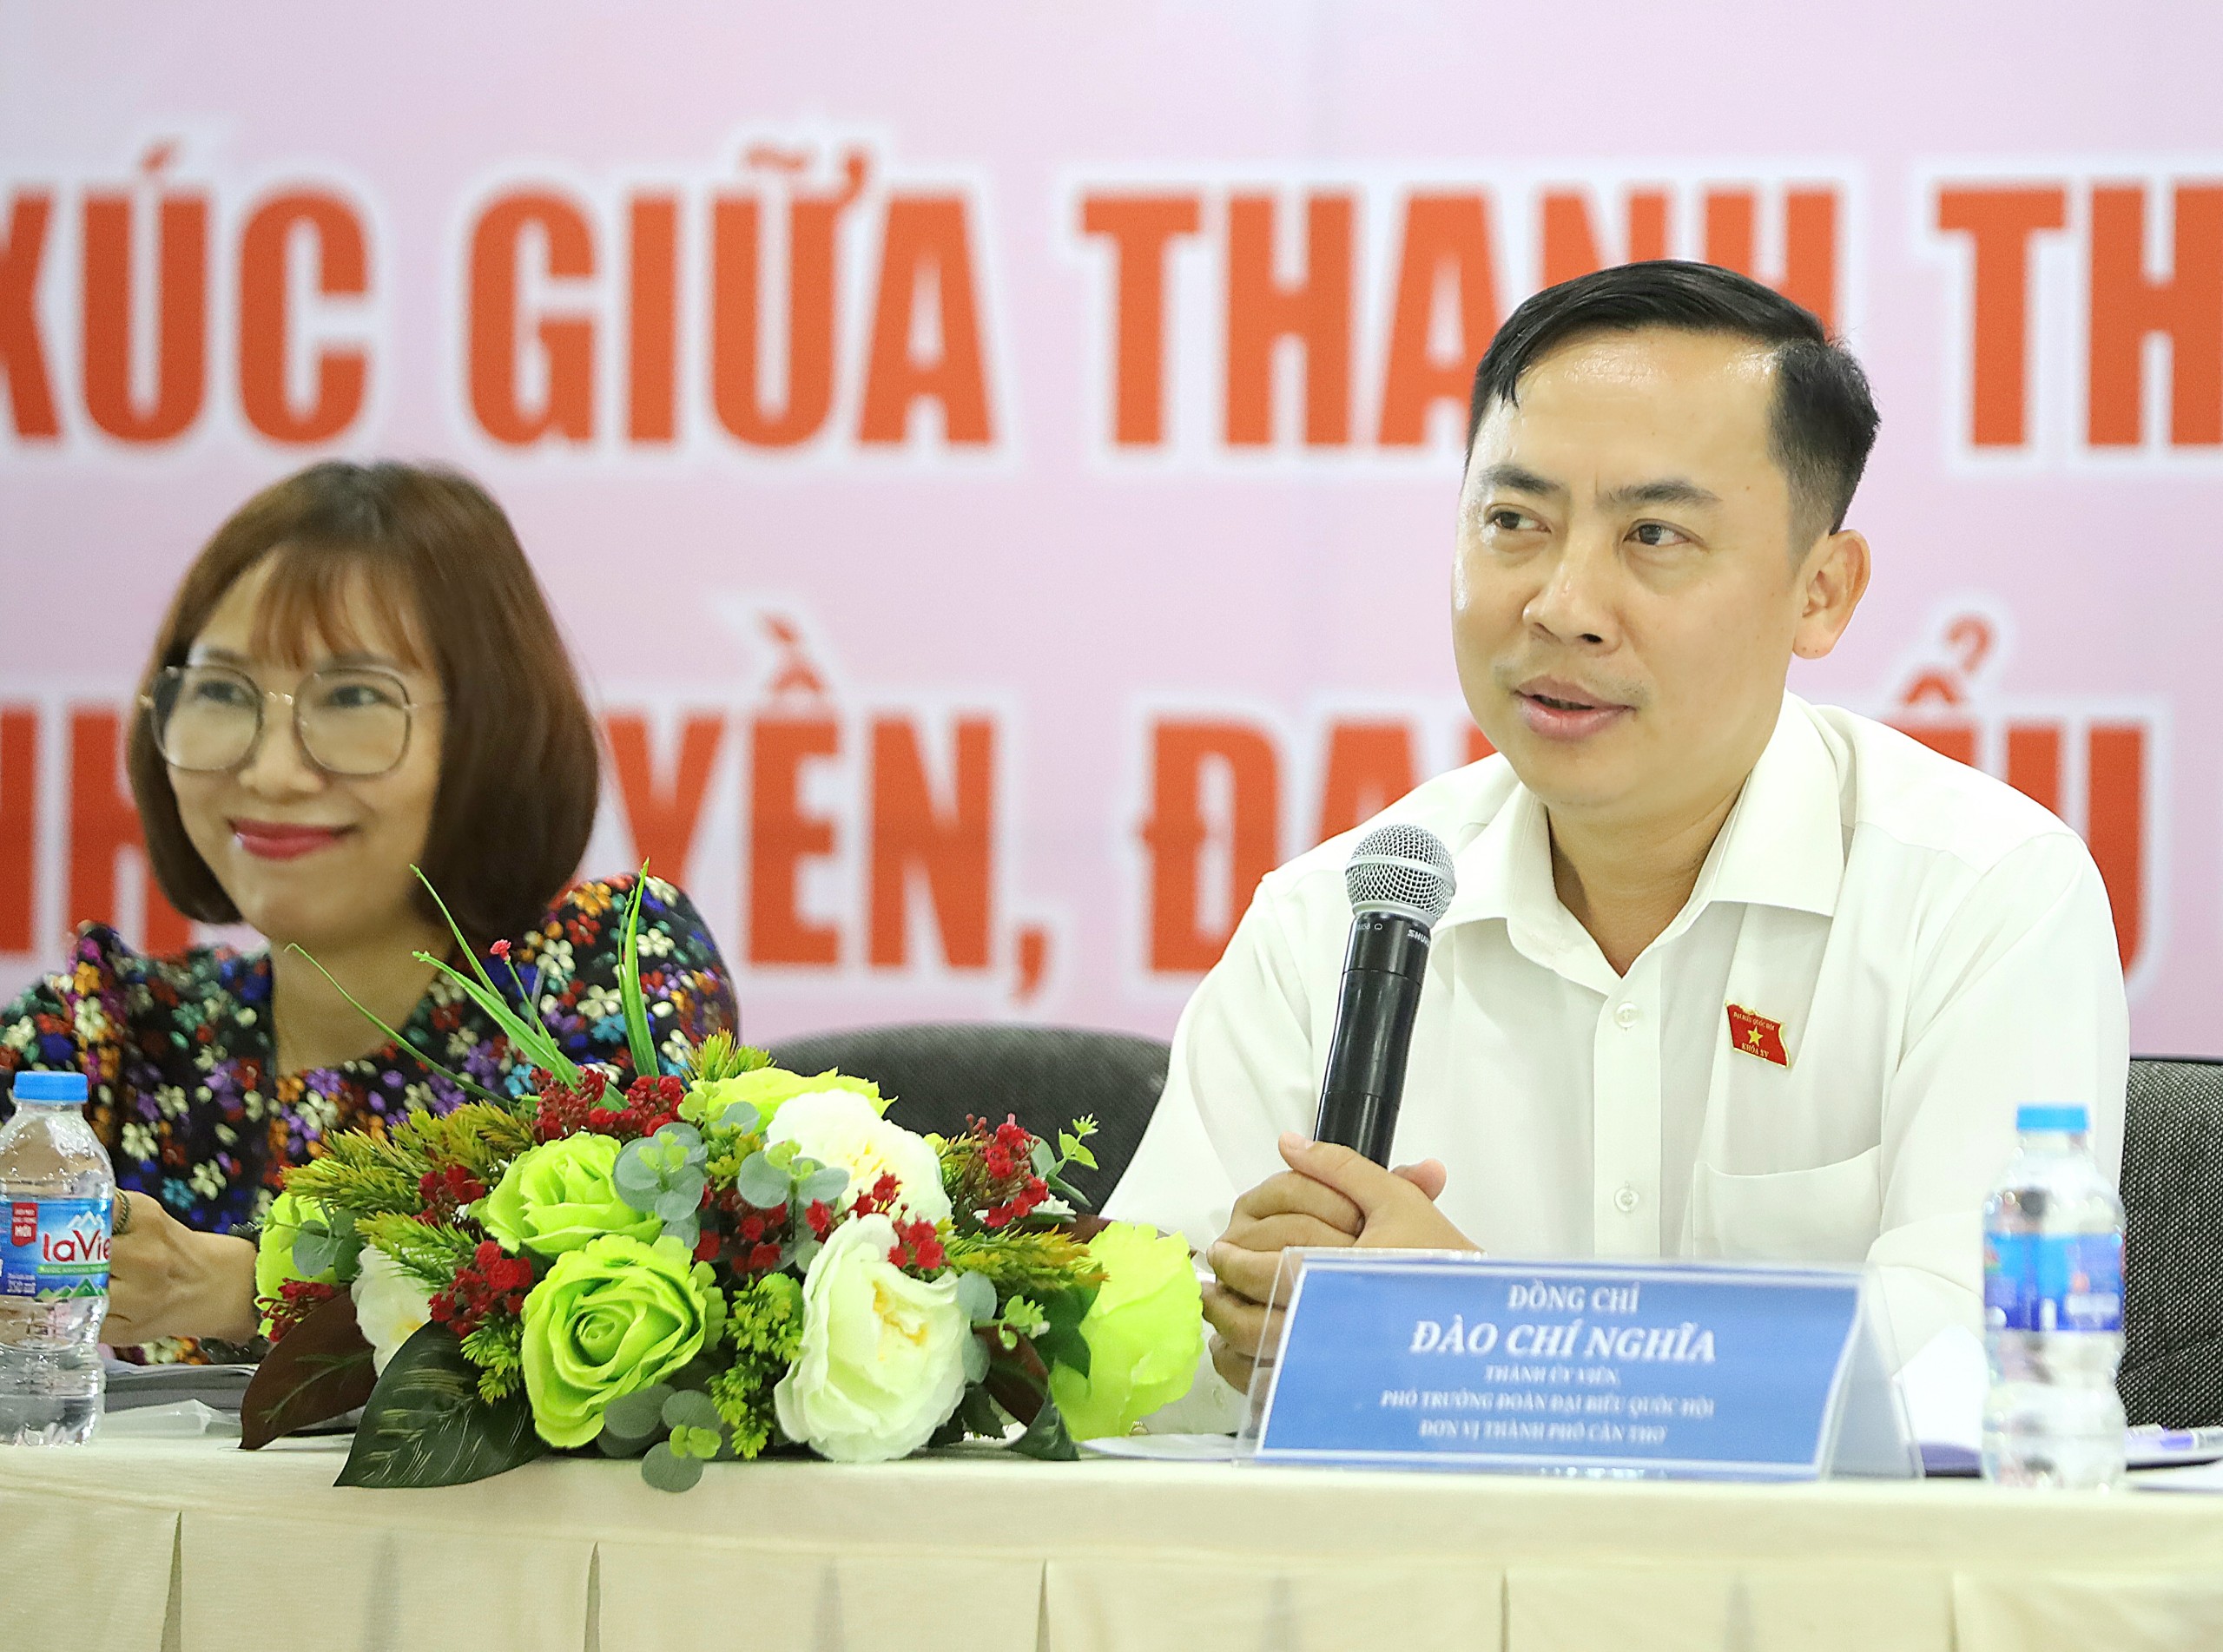 Ông Đào Chí Nghĩa - Phó Trưởng đoàn Đại biểu Quốc hội chuyên trách TP. Cần Thơ trả lời câu hỏi của thanh thiếu nhi tại chương trình.